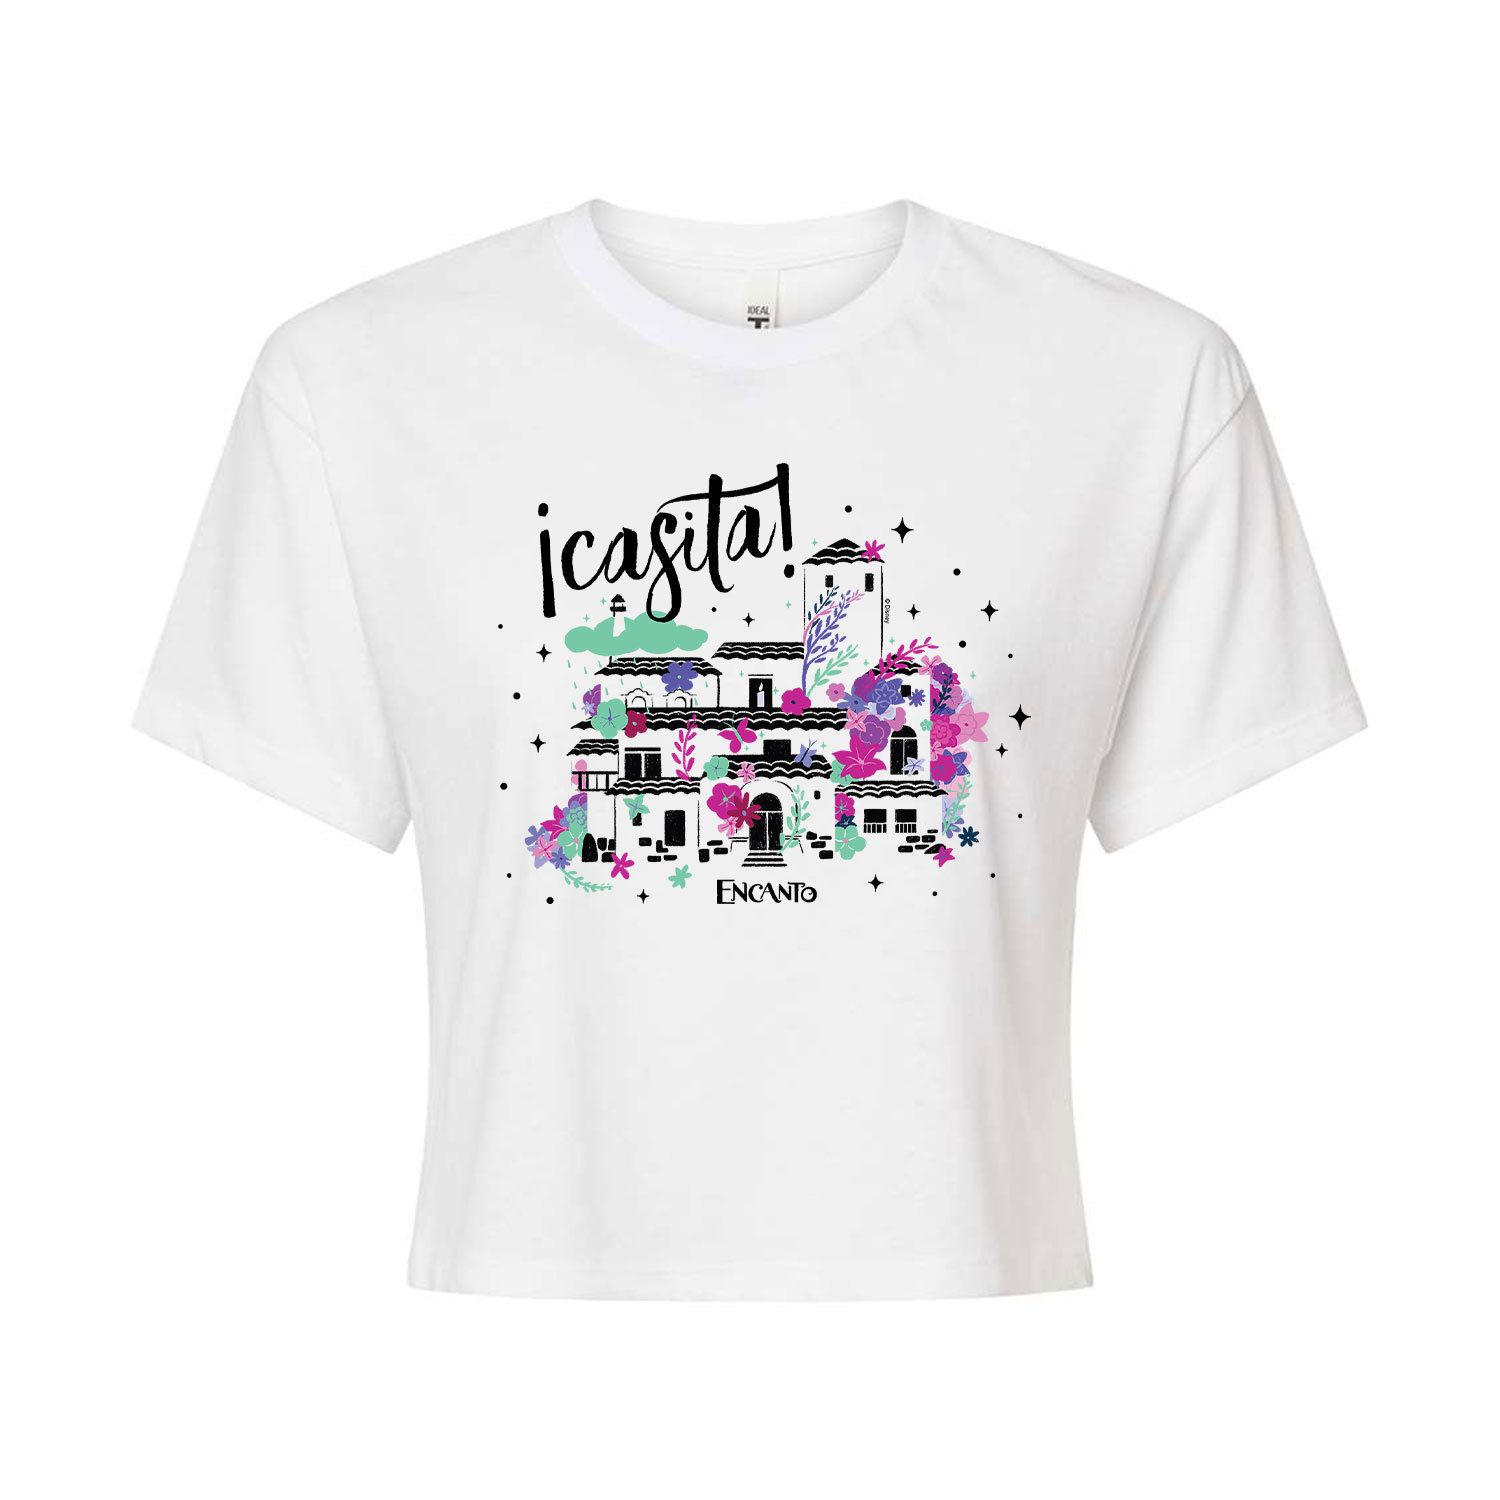 Укороченная футболка с рисунком Casita от Disney's Encanto Juniors Disney, белый